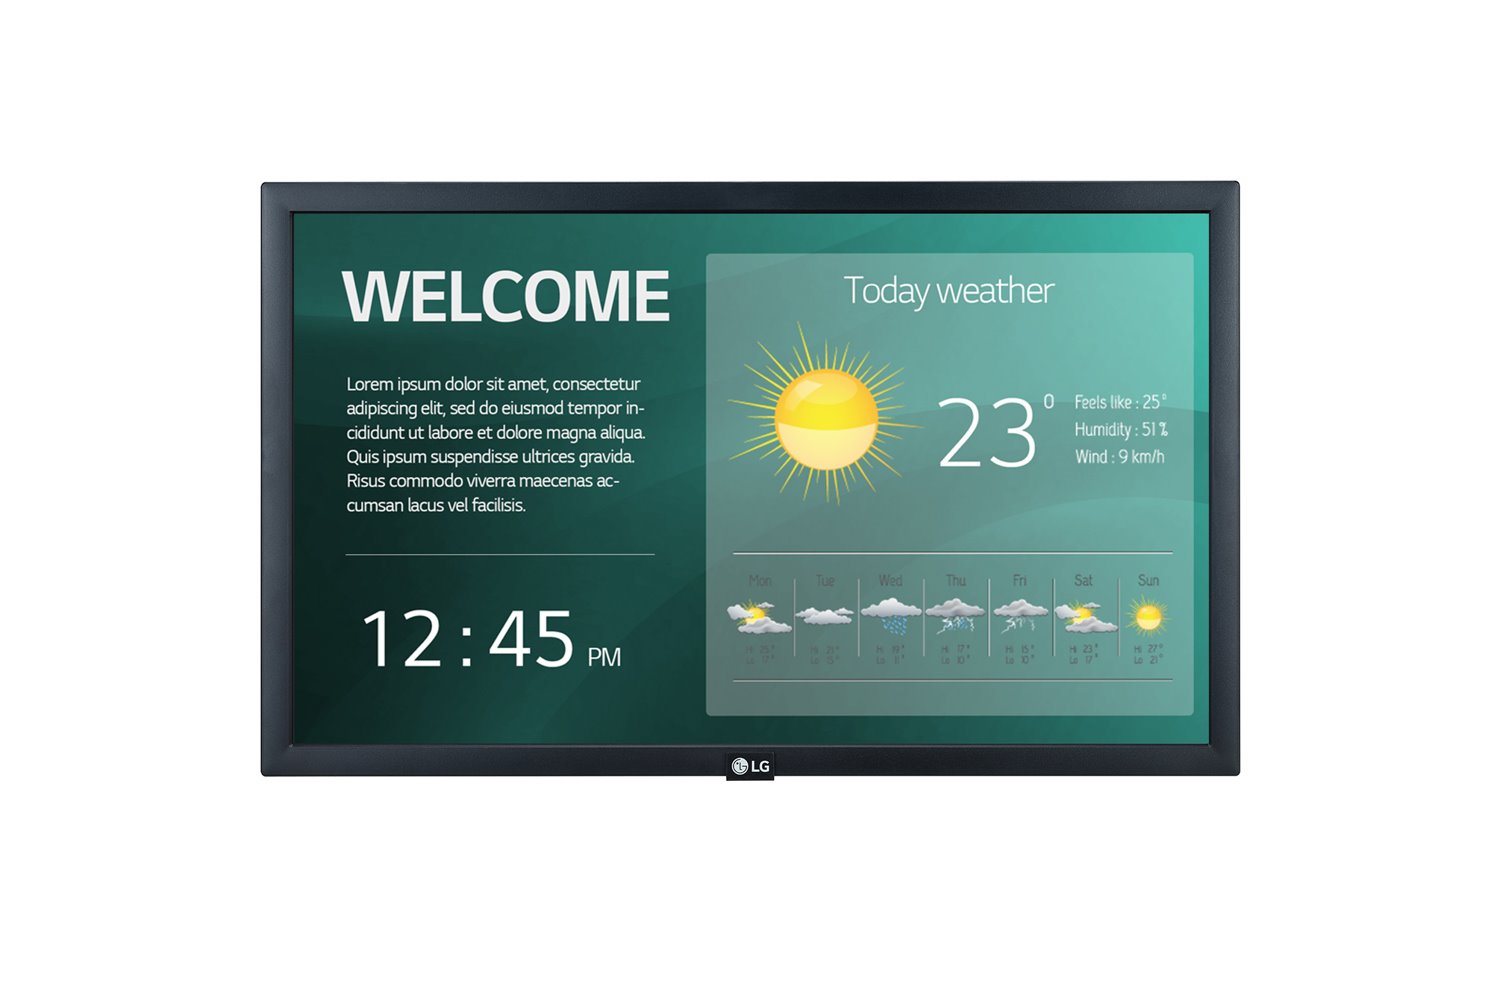 LG Digital Display (Sm5ke) 22" FHD Led, 250Nits, Hdmi, Usb 2.0, Lan, Web O/S,P/L,16/7, 3YR